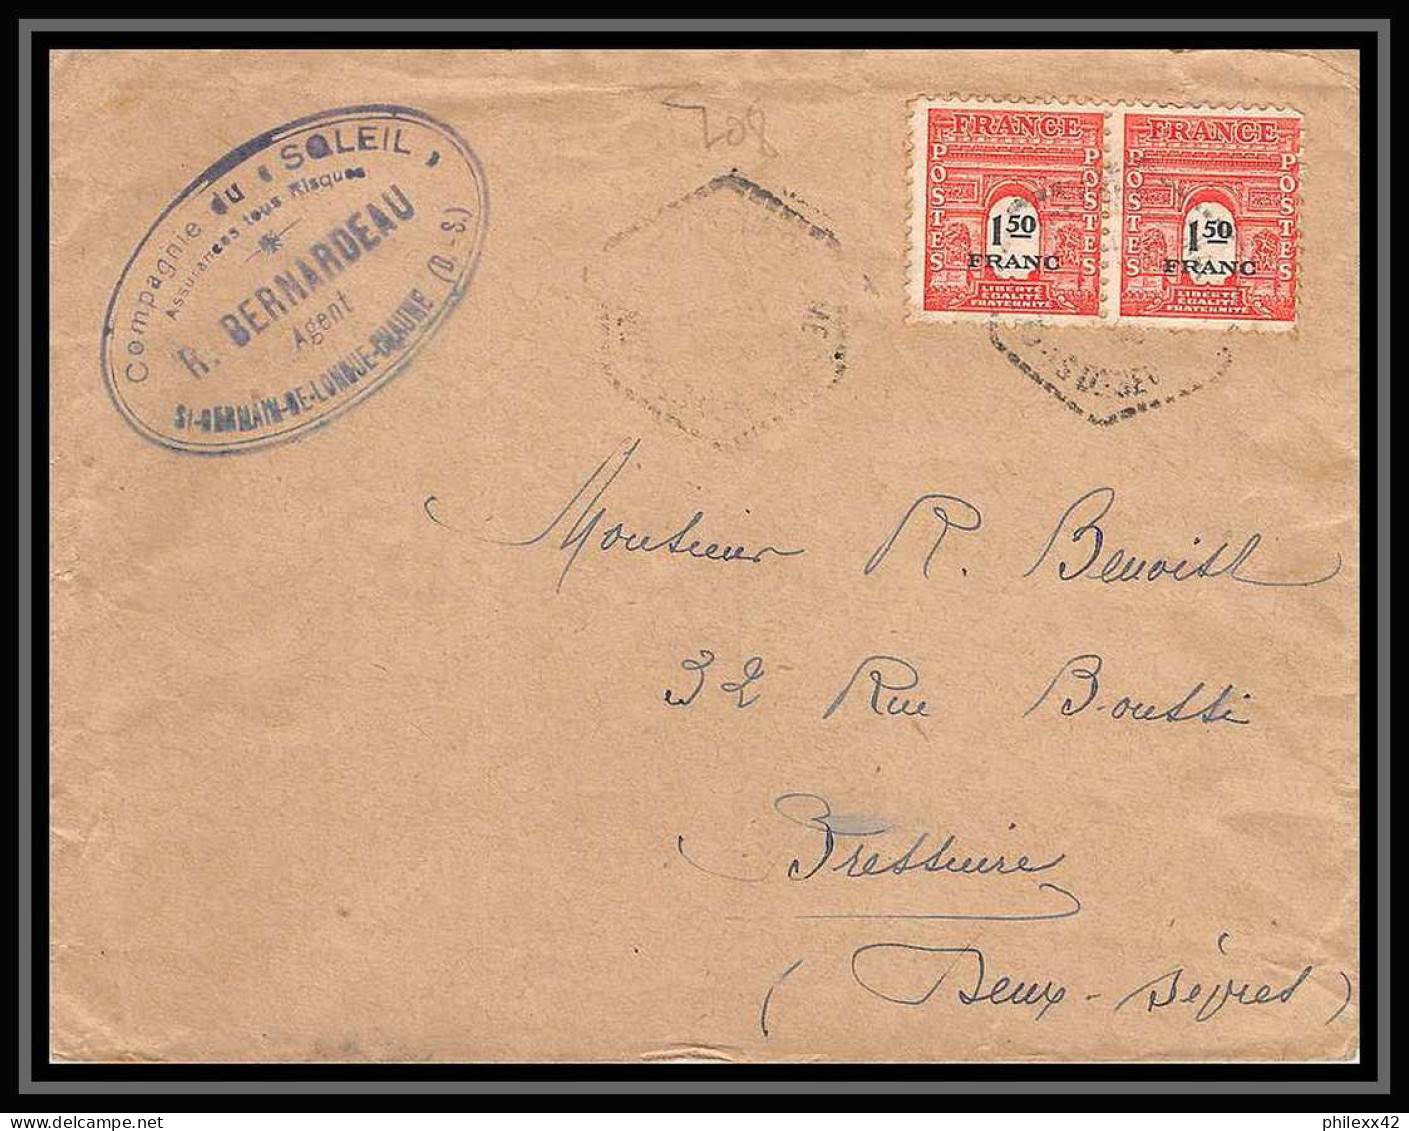 2589 France N°708 Arc De Triomphe Saint Germain De Longue Chaume Pour Bressuire Lettre (cover) - 1944-45 Arc De Triomphe